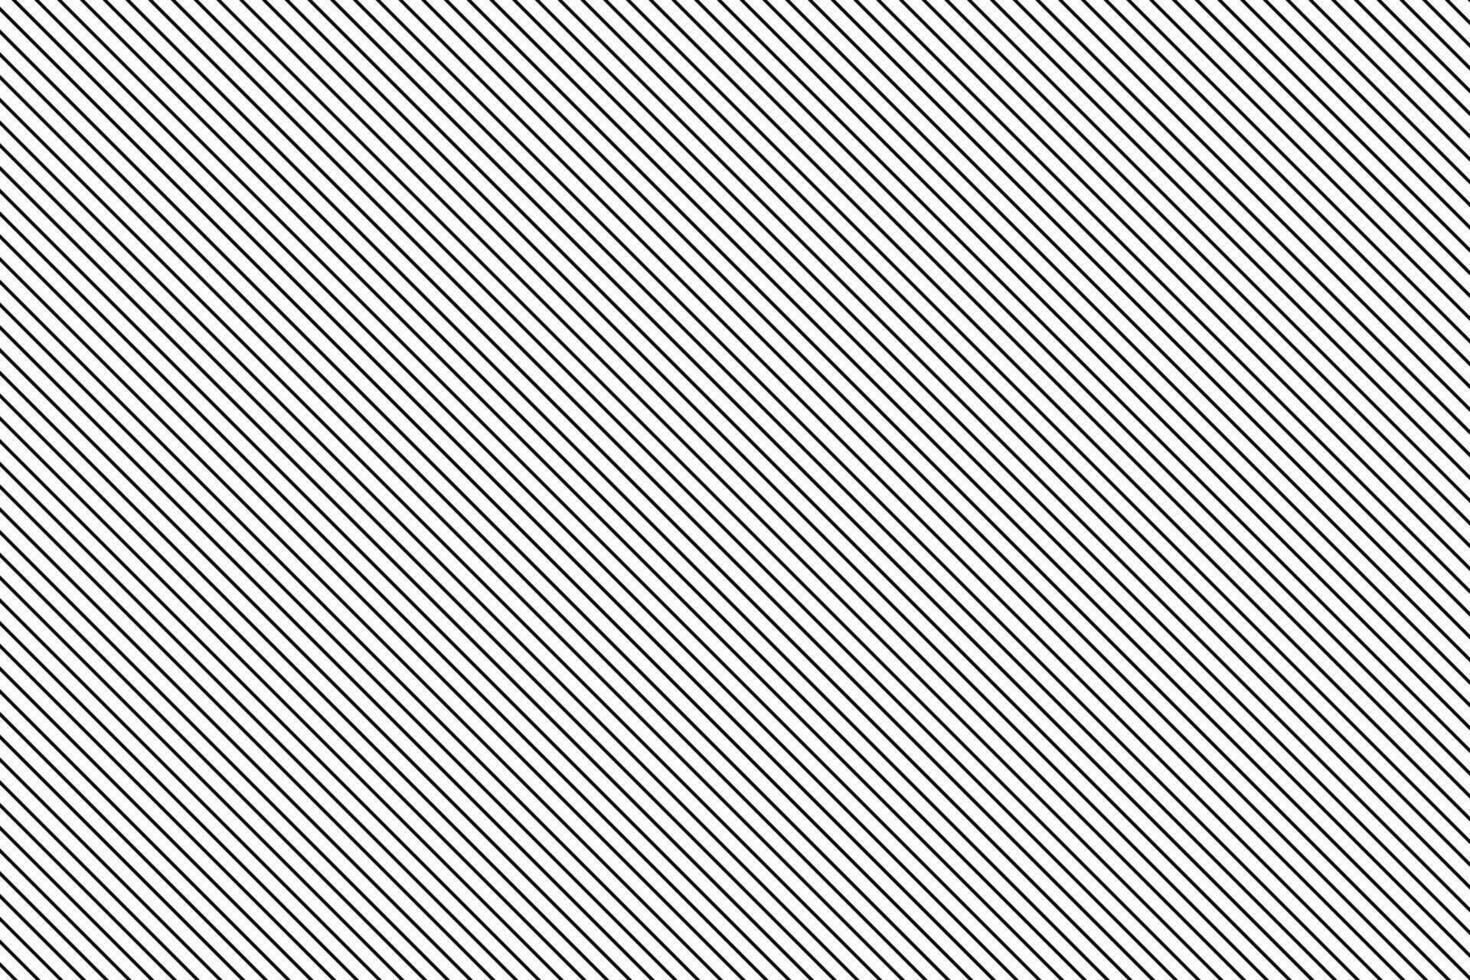 abstrakt nahtlos schwarz Streifen Gerade Linie Muster. vektor